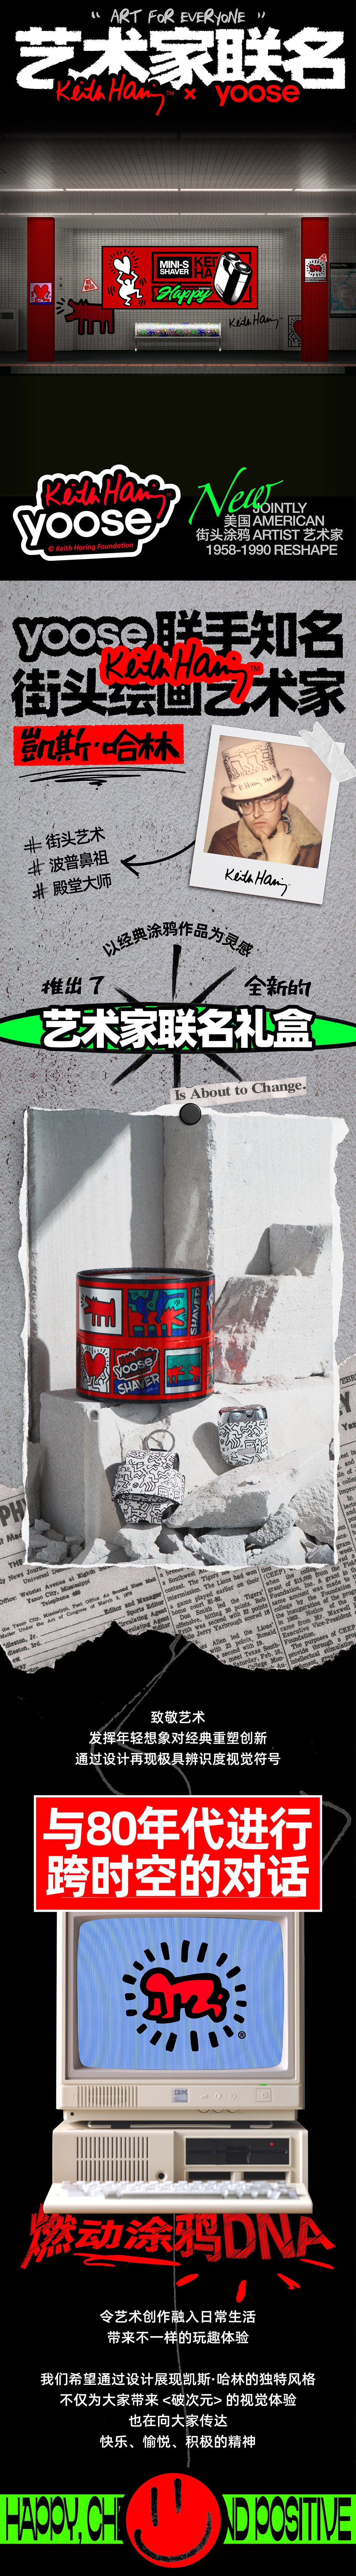 yoose® x Keith Haring ™艺术家联名礼盒